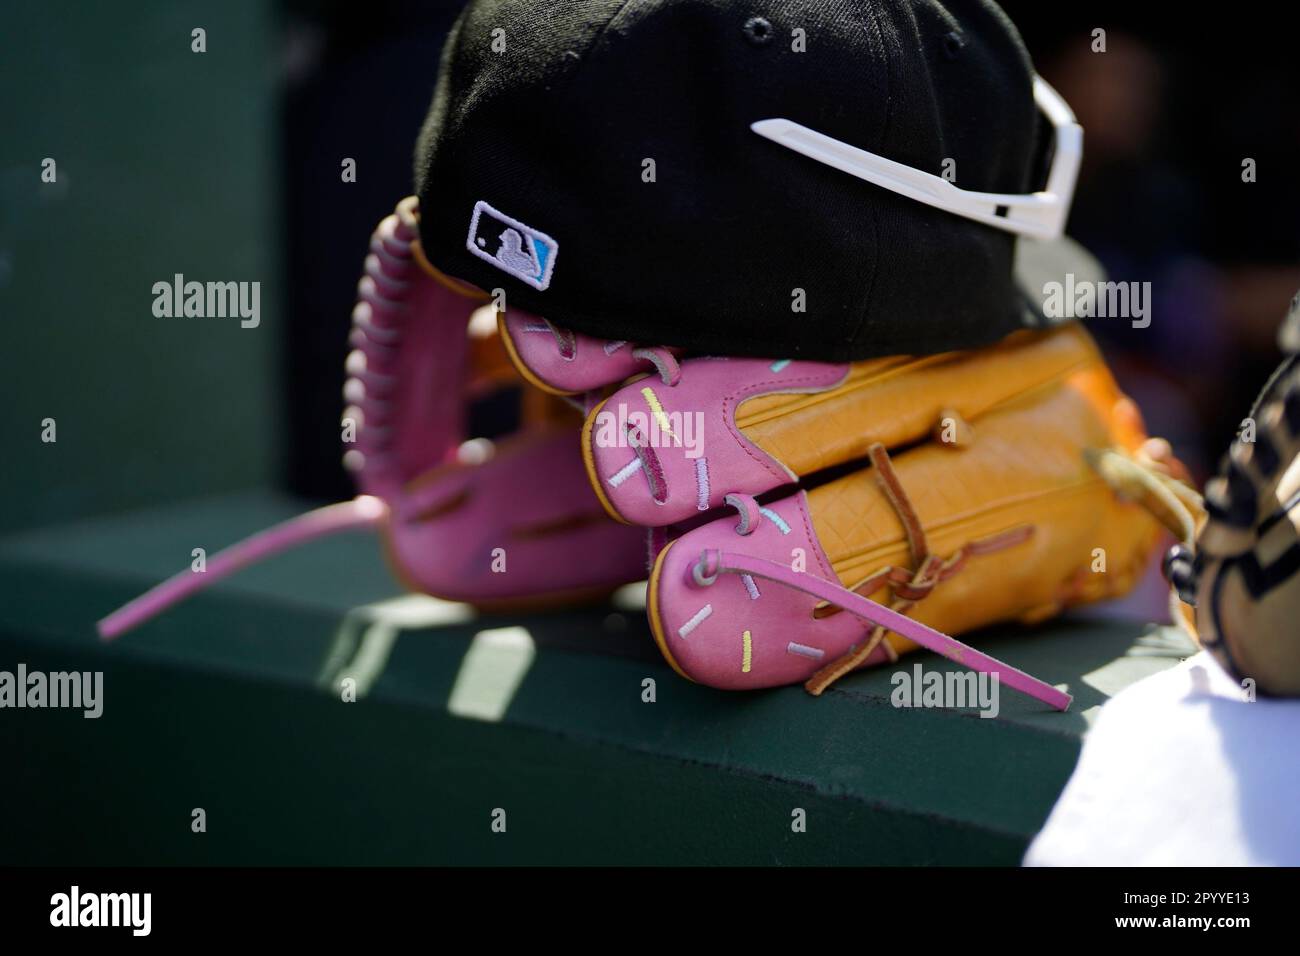 Miami Marlins center fielder Jazz Chisholm Jr.'s glove during the